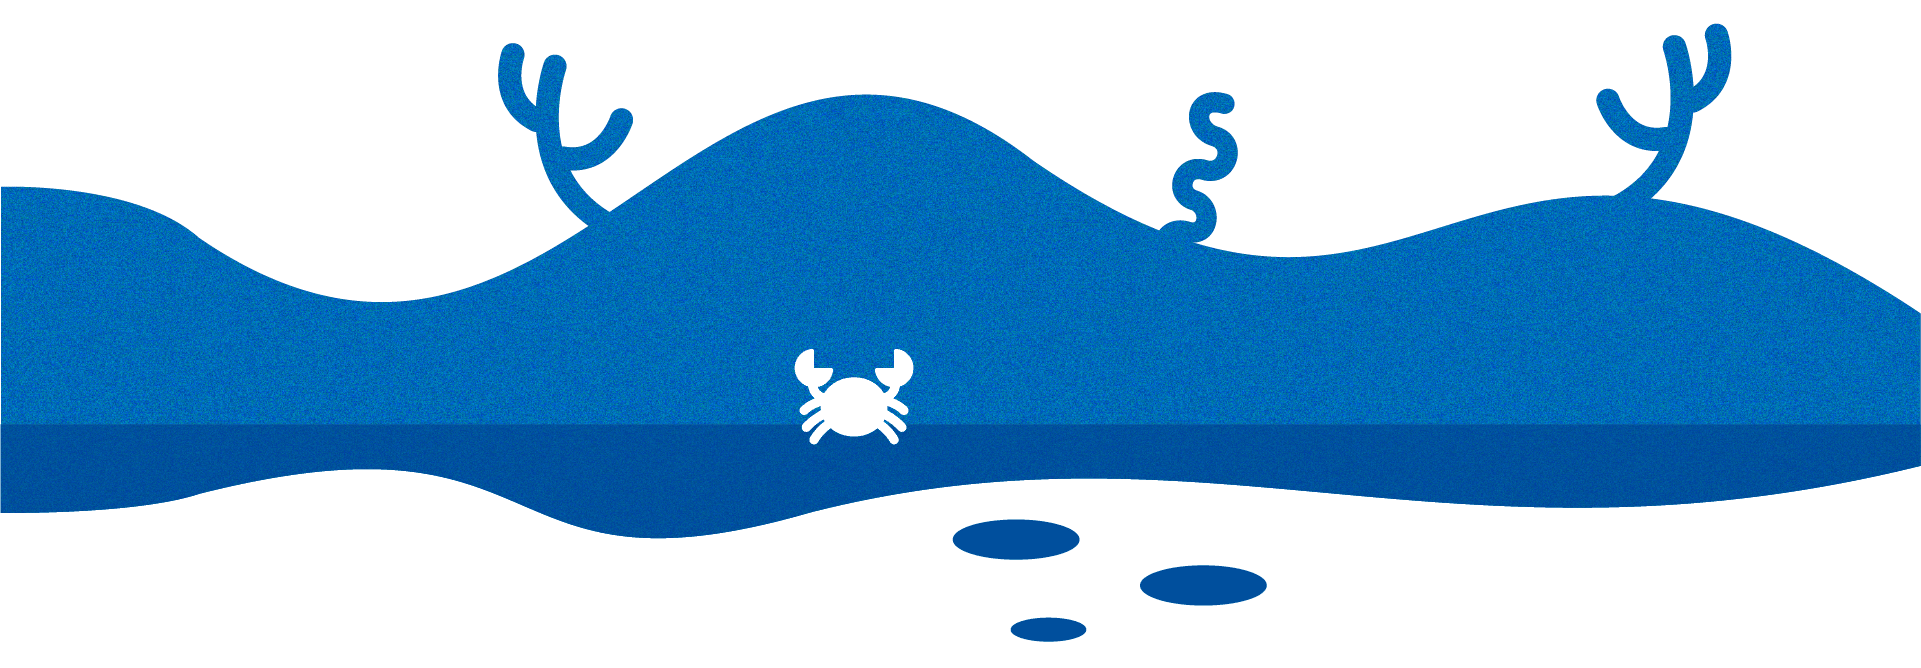 Imagen estilizada azul de un cangrejo en el fondo marino azul